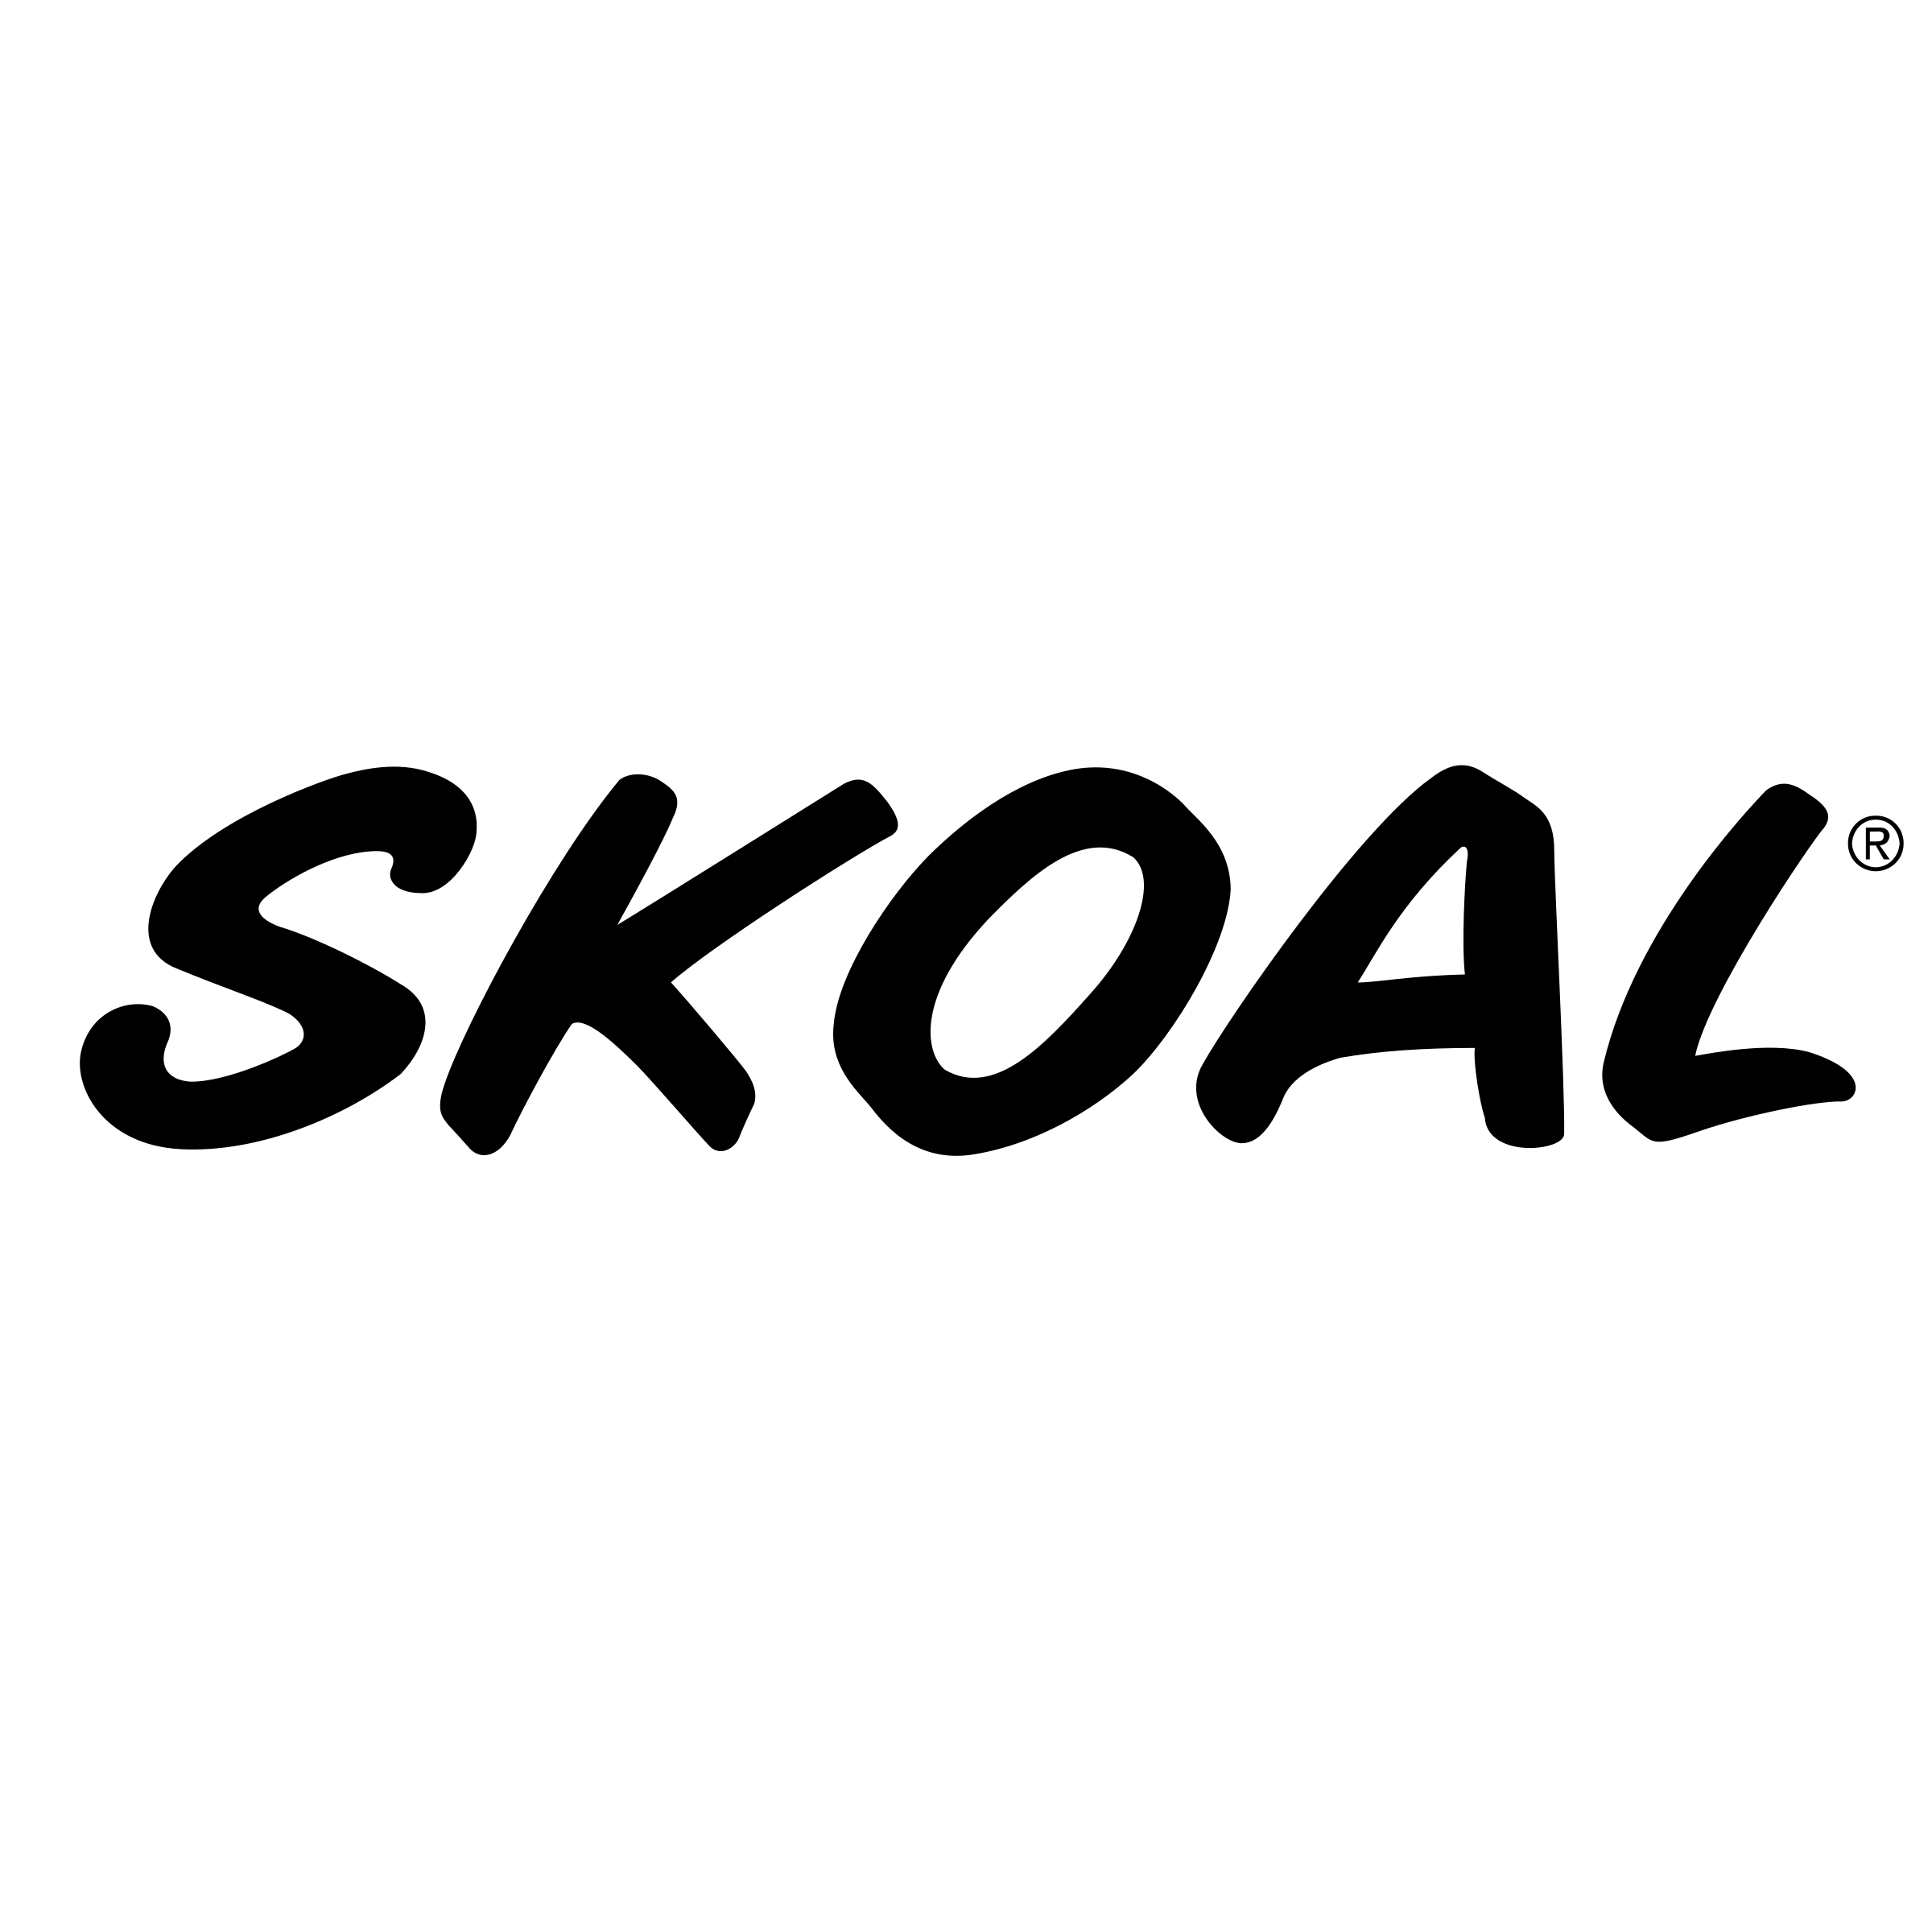 Skoal Logo - Skoal Logo PNG Transparent & SVG Vector - Freebie Supply